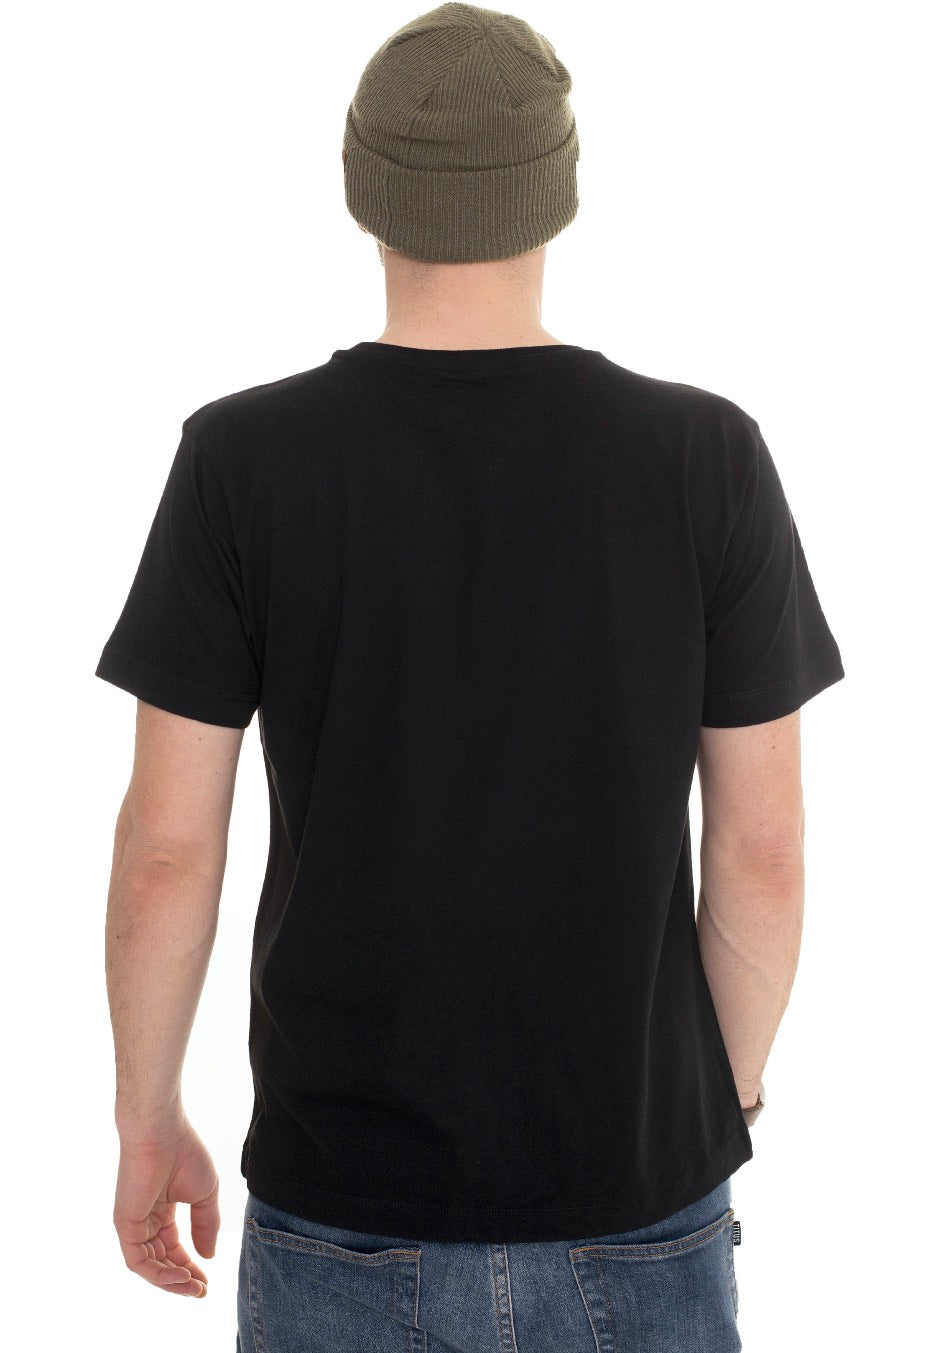 Rammstein - Werk - T-Shirt | Men-Image